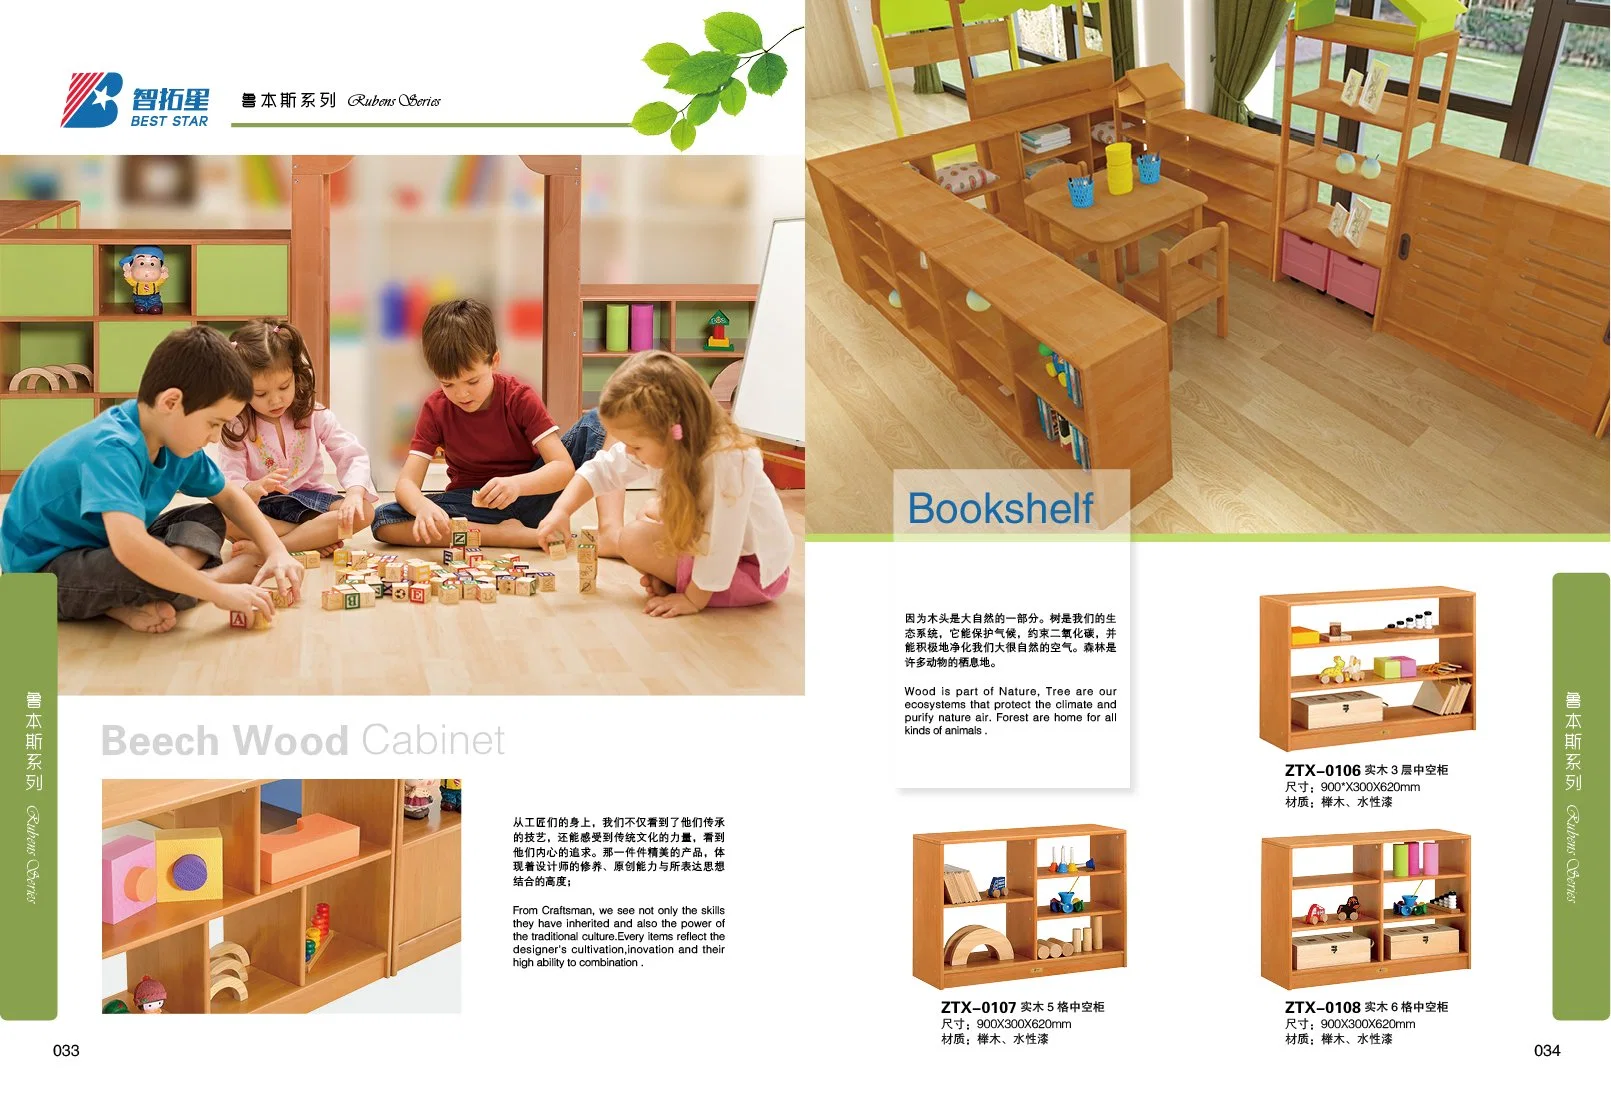 Мебель для детских комнат, Мебель для детских садов, Мебель для детских садов и дошкольных учреждений, Мебель для школьных аудиторий, Мебель для детских садов, Мебель для детских садов